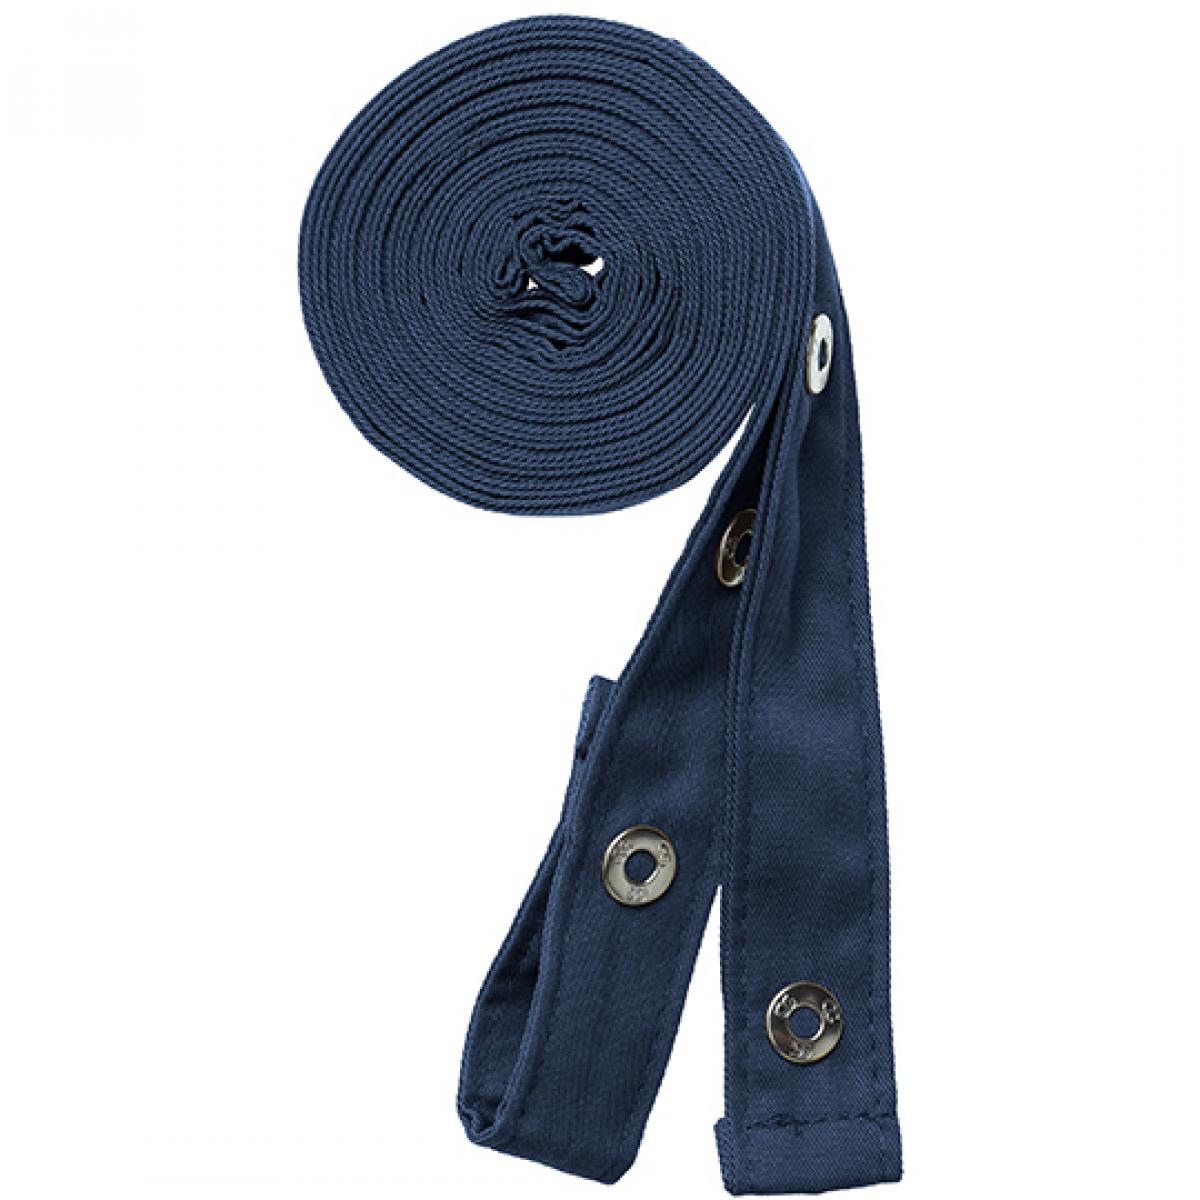 Hersteller: CG Workwear Herstellernummer: 42128 Artikelbezeichnung: Pizzone Classic Strap Set Druckknopf Farbe: Dark Blue